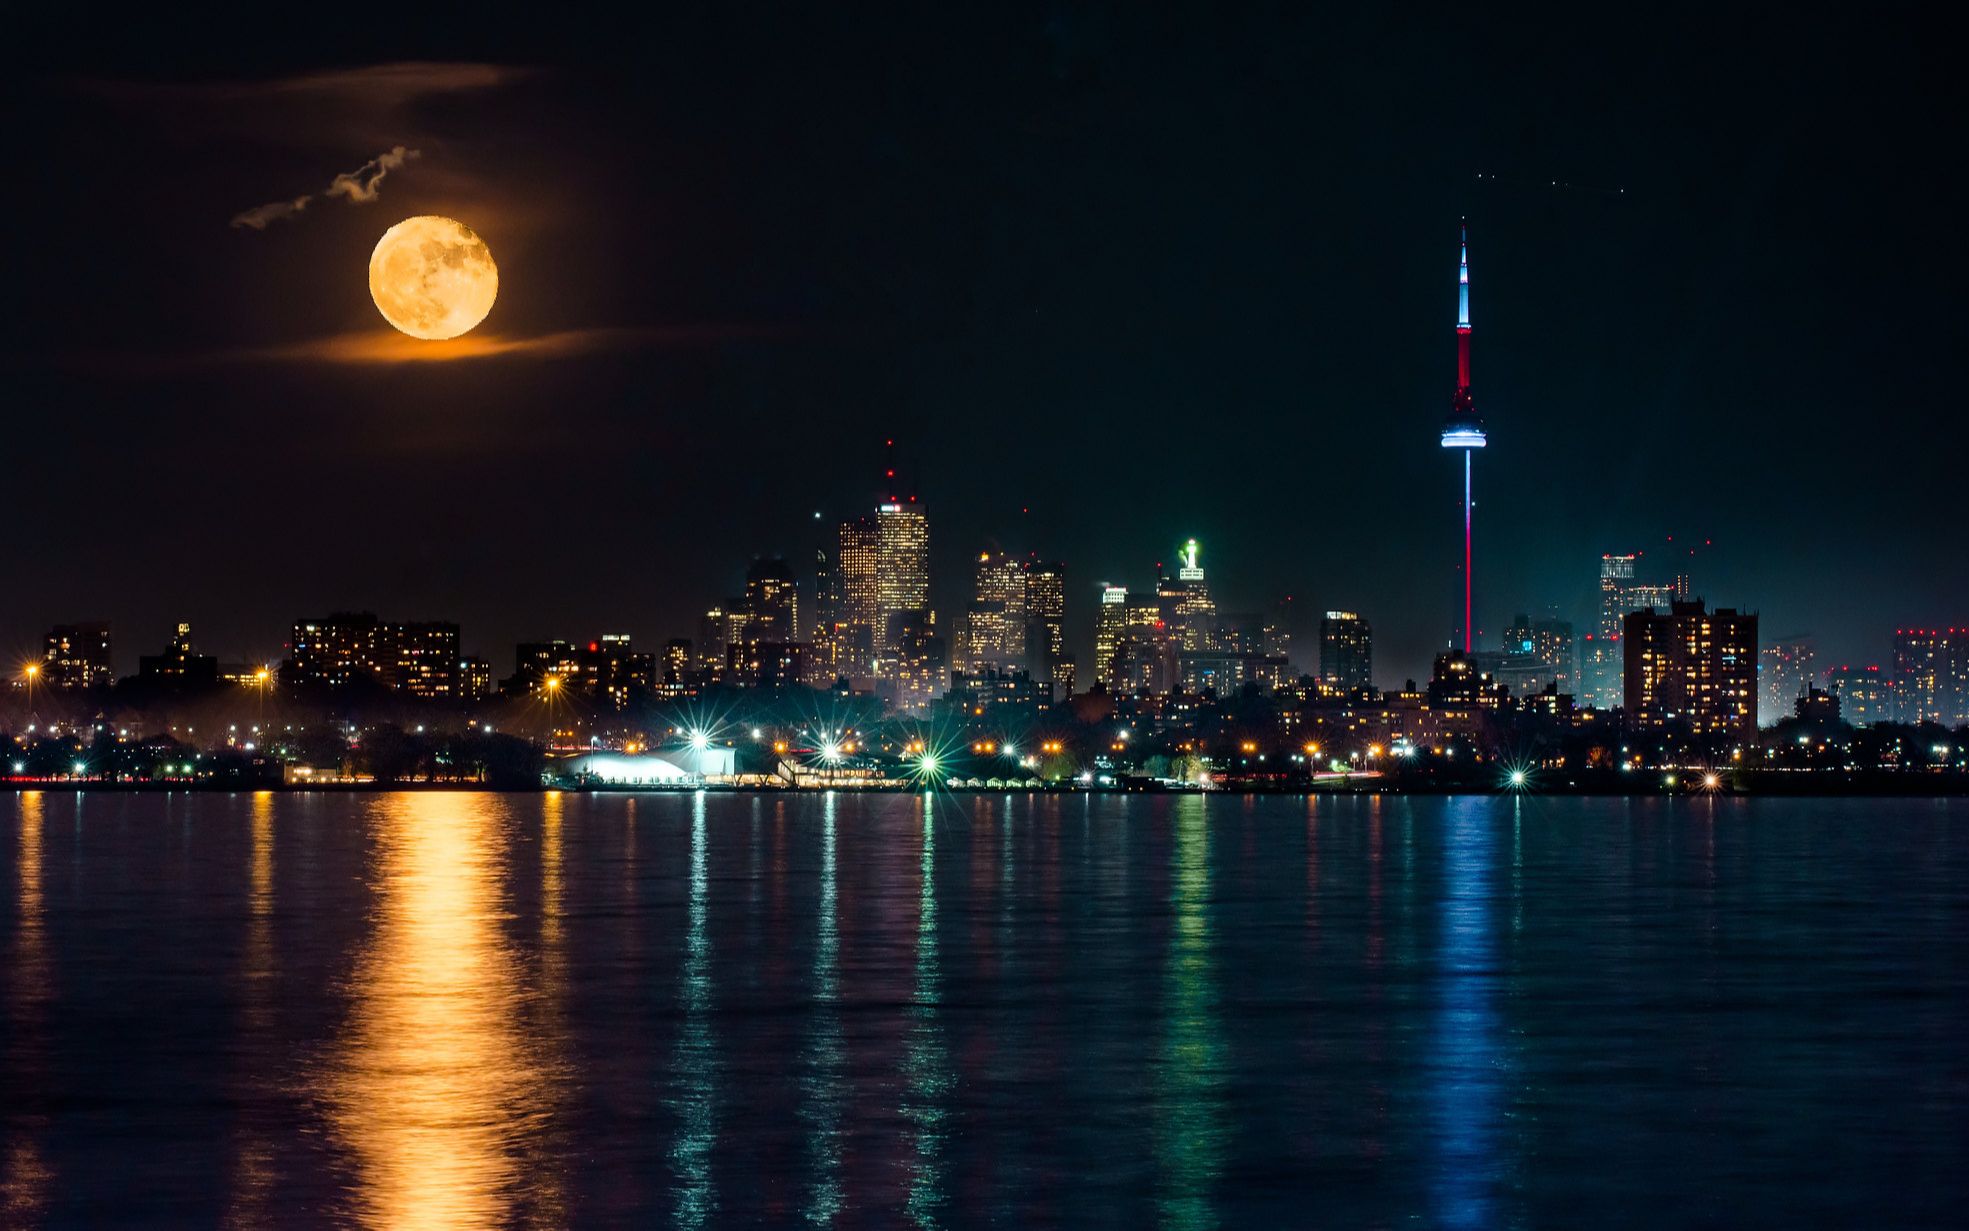 月亮照亮湖面和在湖面的倒影 多伦多城市摩天大楼夜景灯光